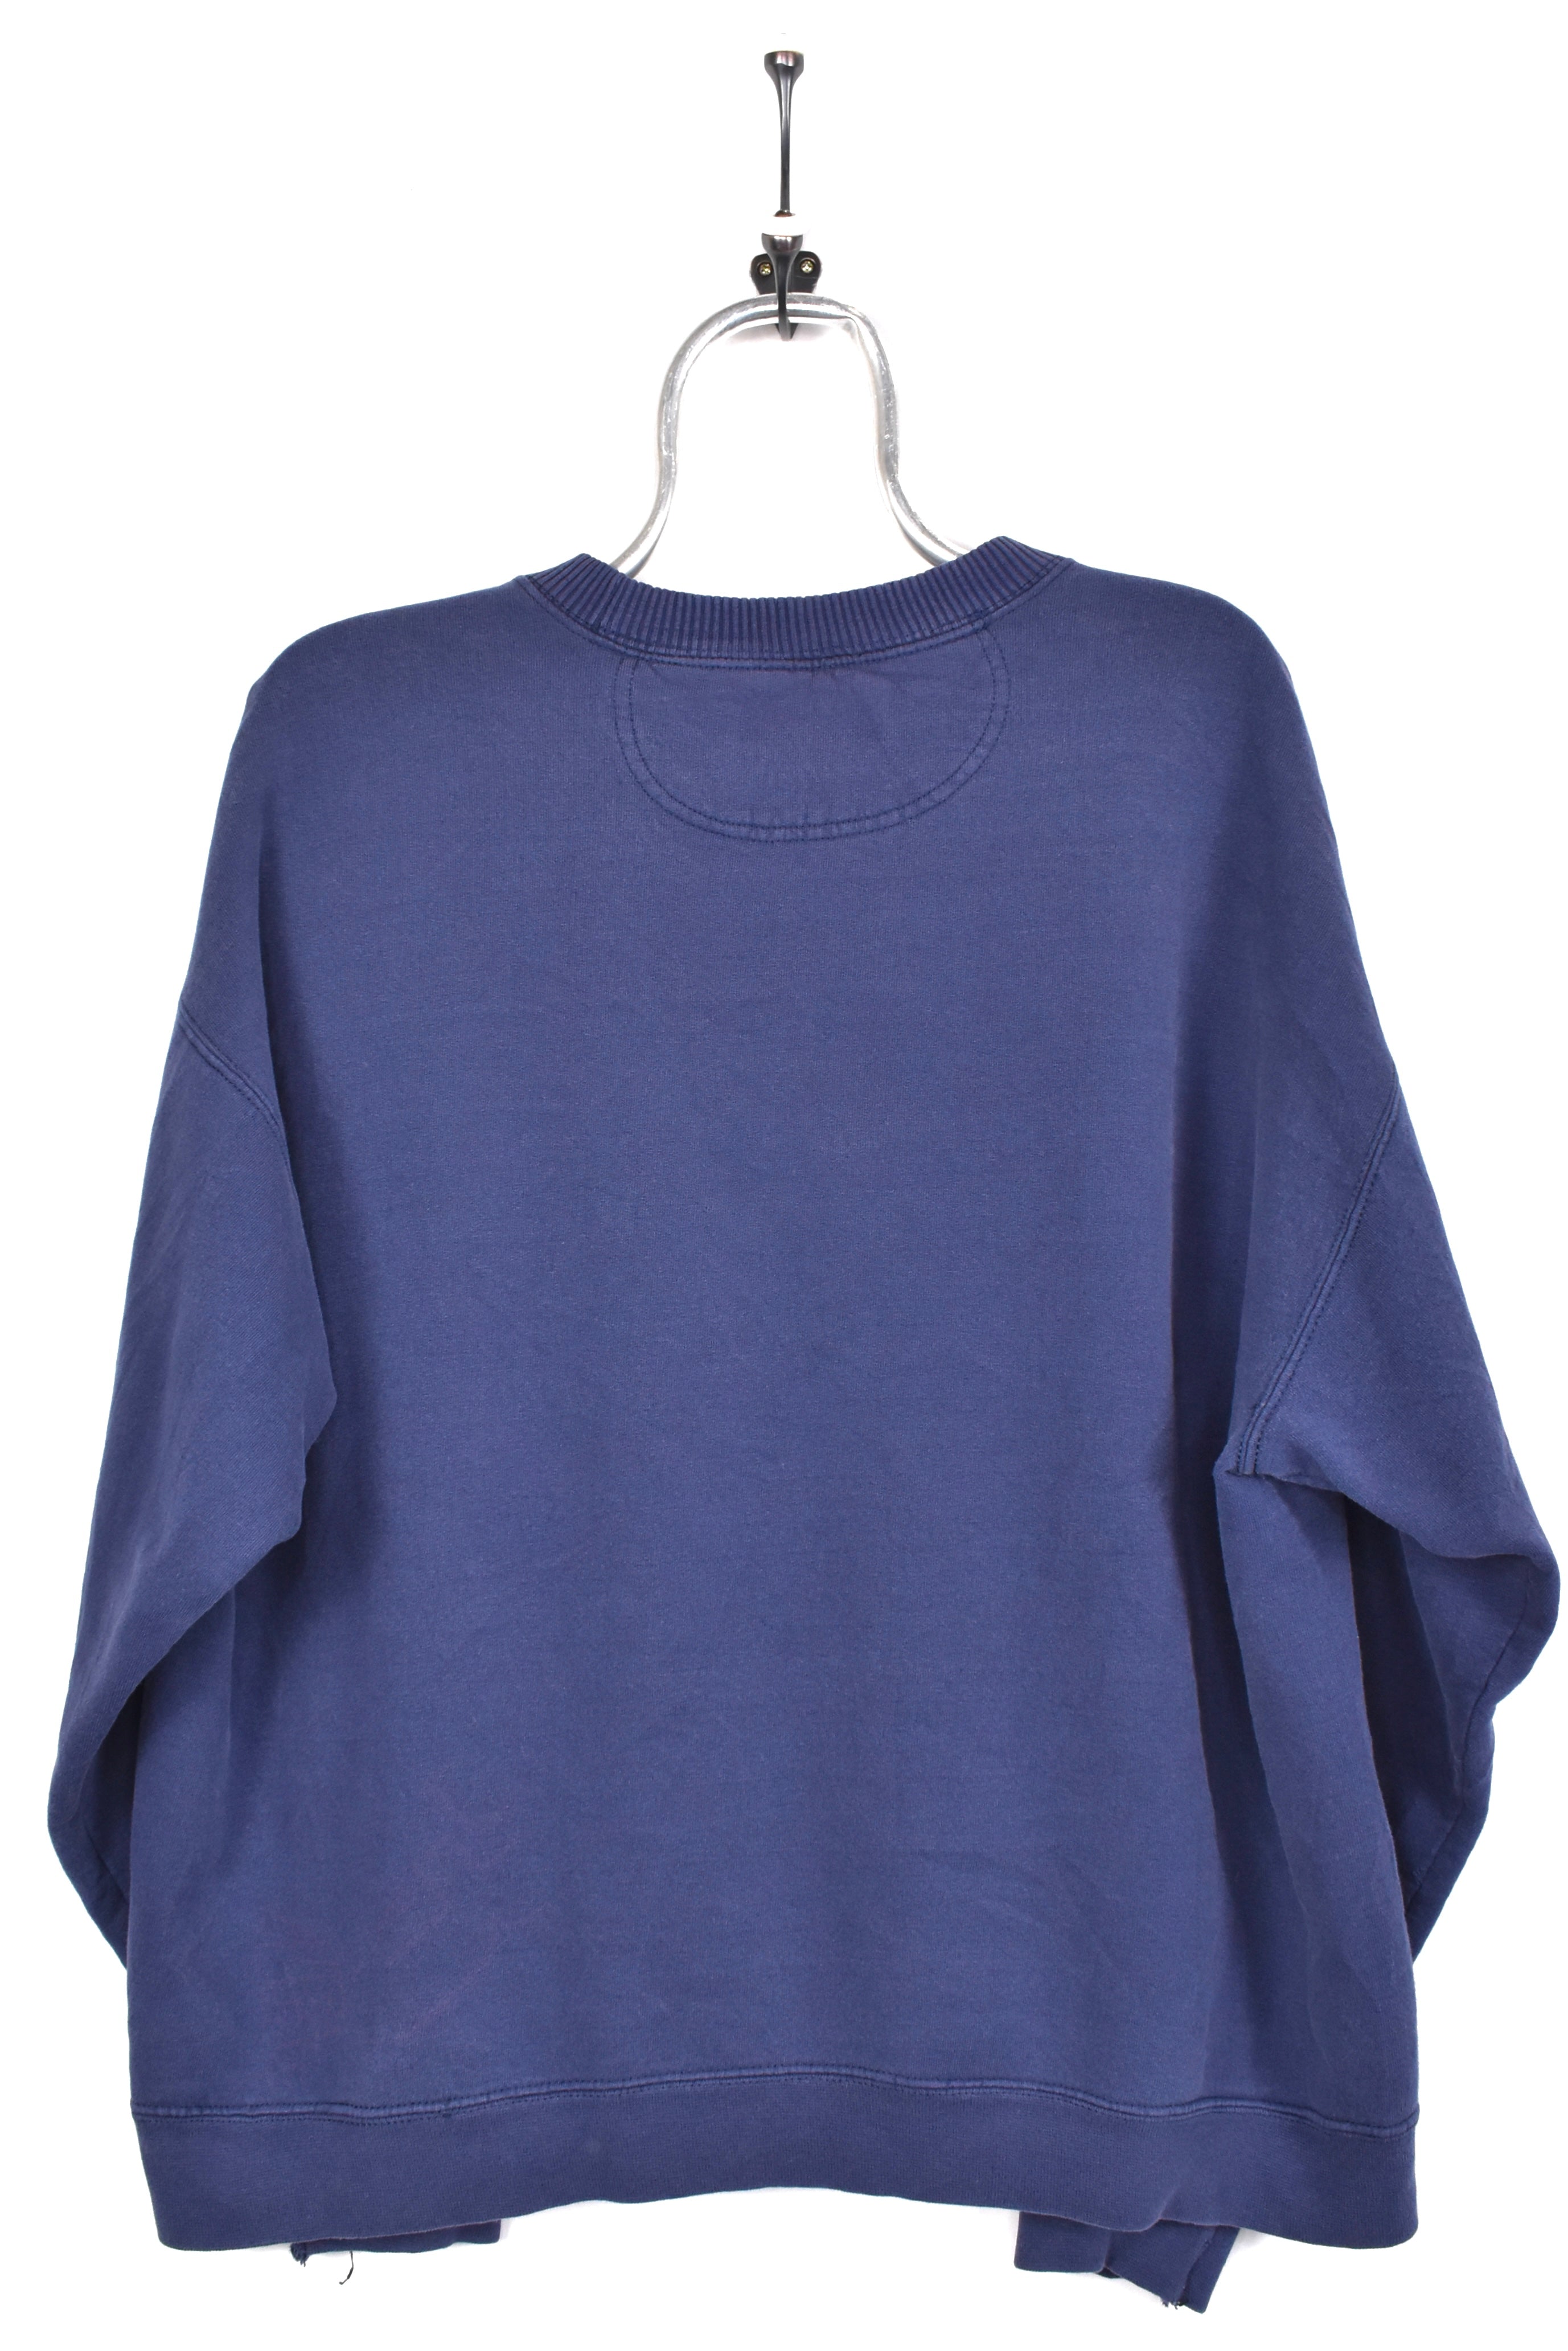 Vintage Starter sweatshirt, navy blue basic embroidered crewneck - AU Large STARTER